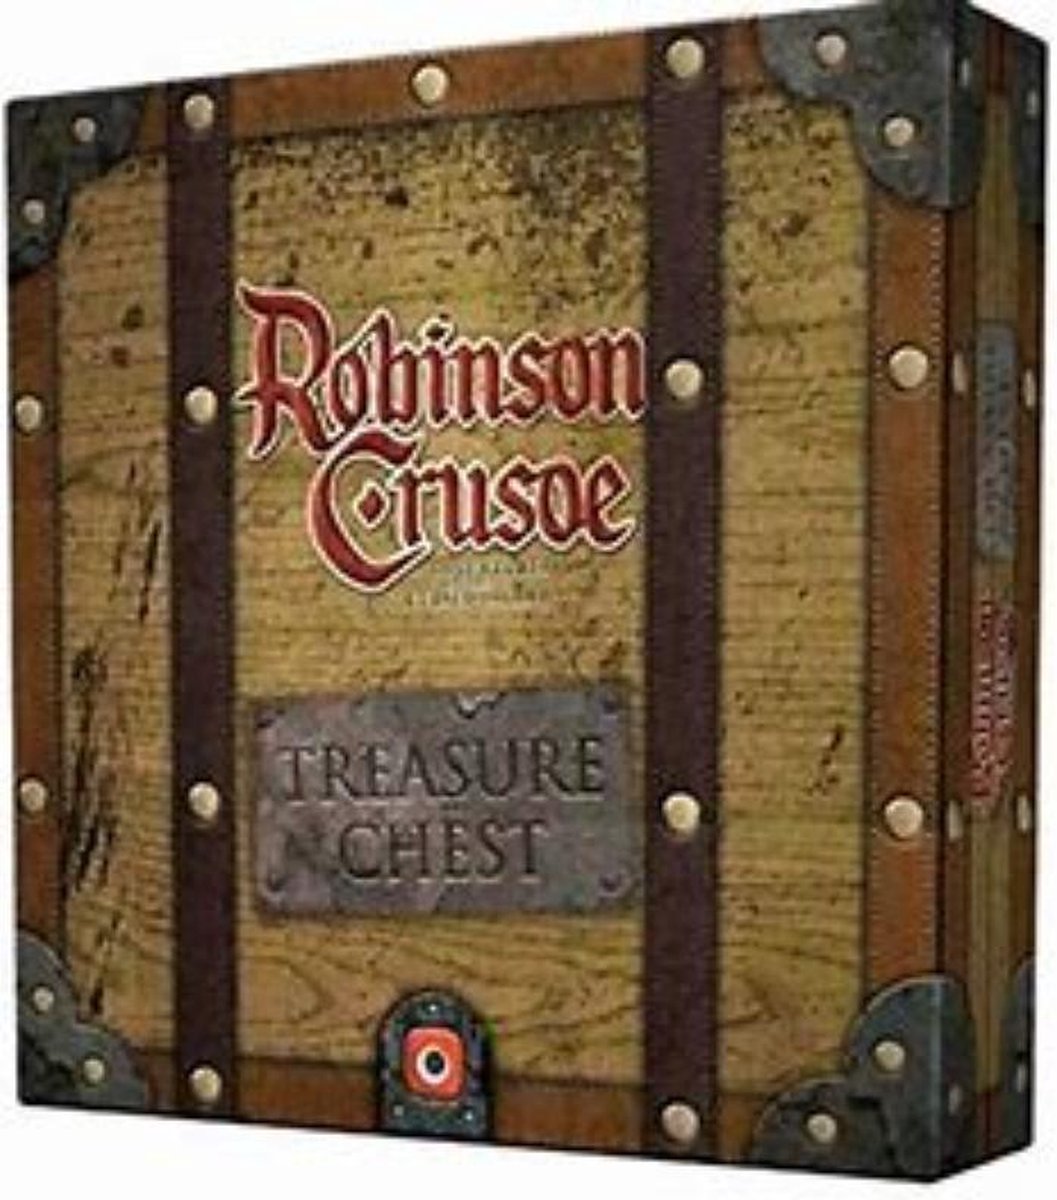 Robinson Crusoe : Treasure Chest